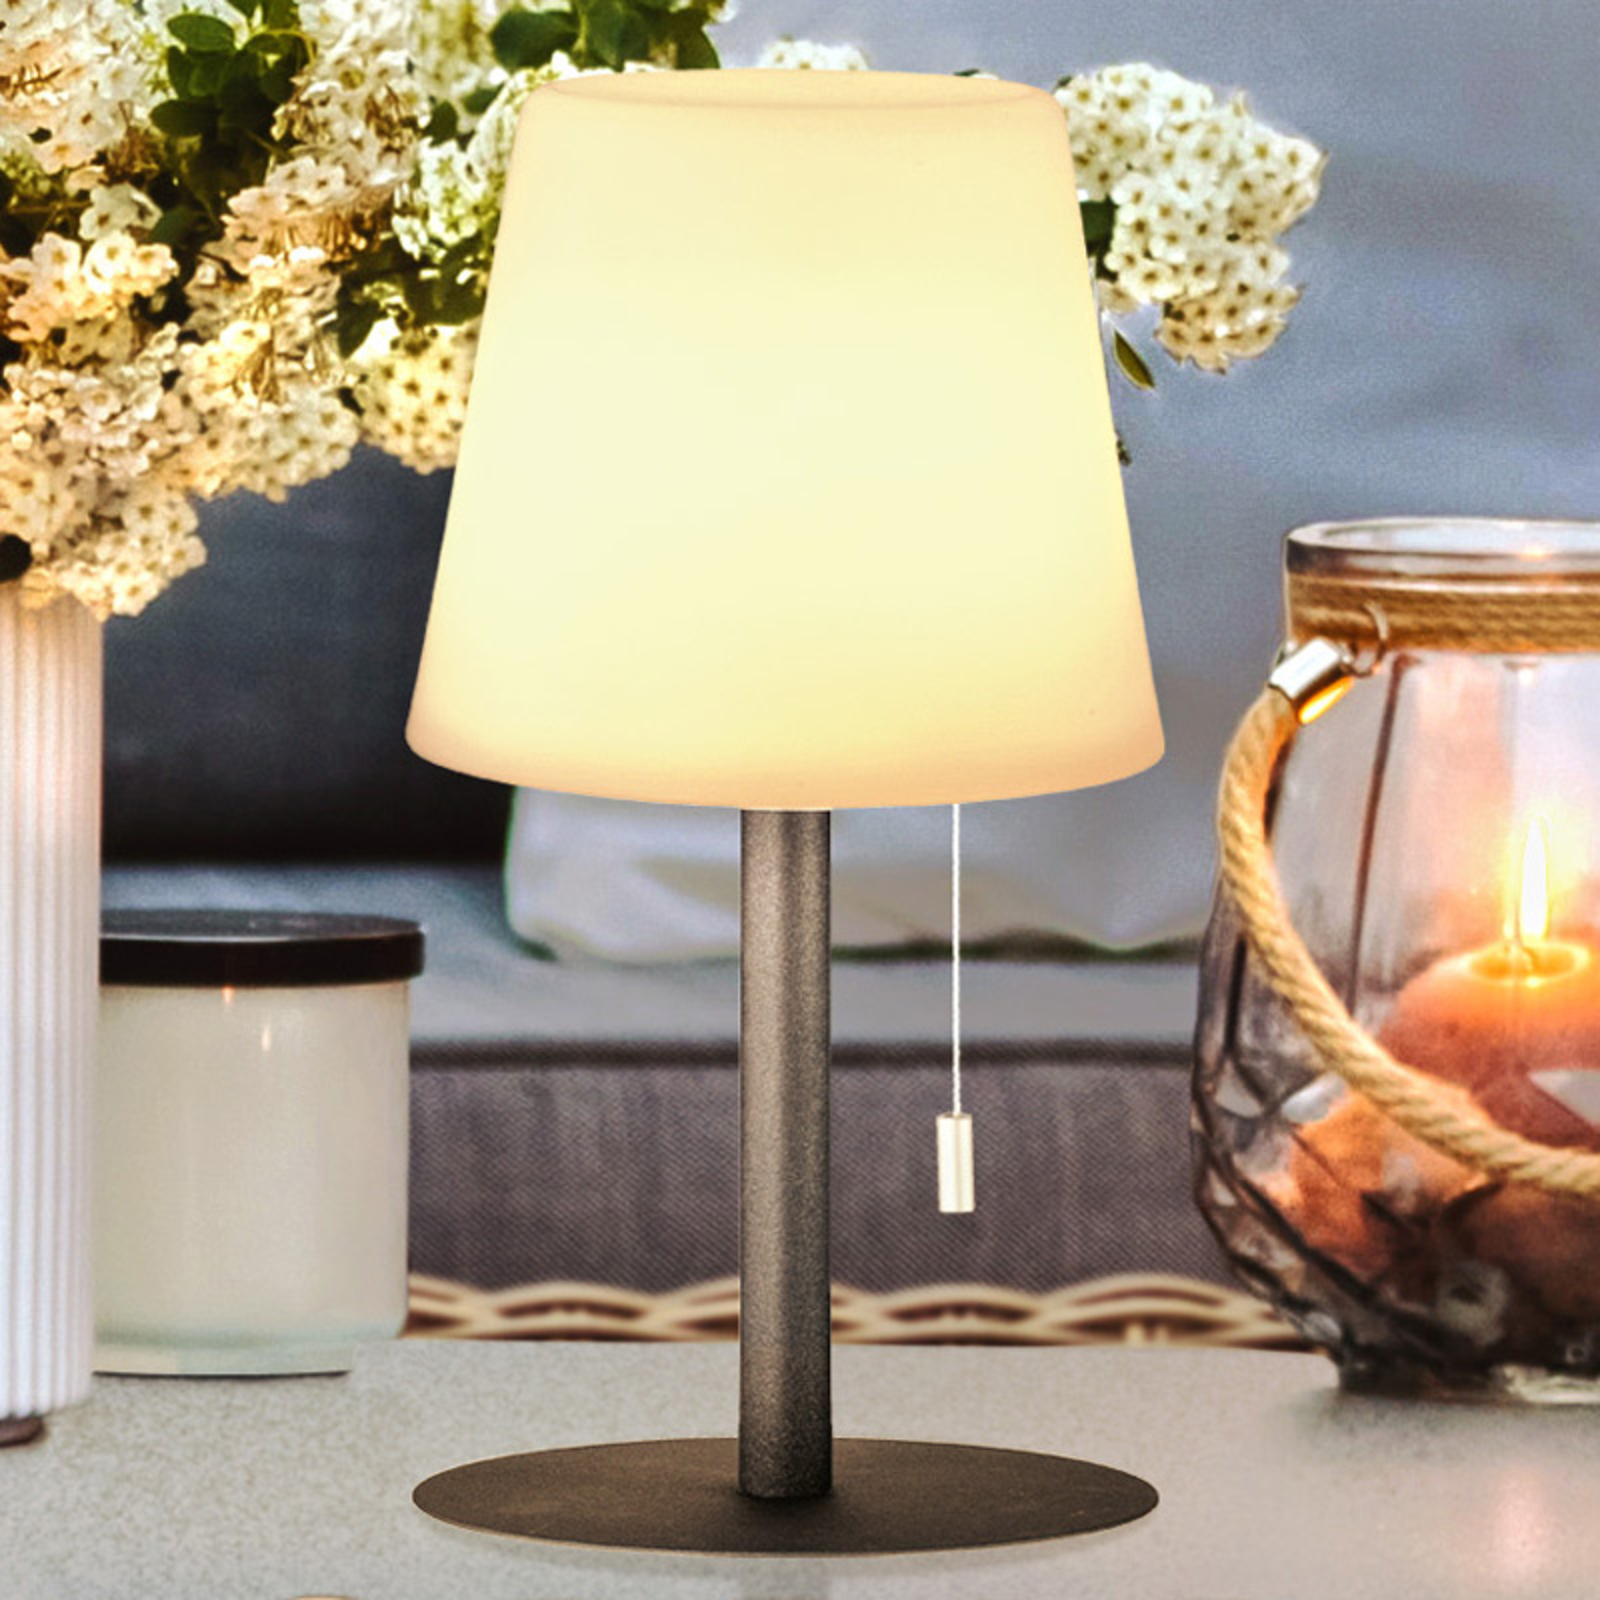 accessoires Trouw beetje LED tafellamp Garden, dimbaar met kleurverandering | Lampen24.be